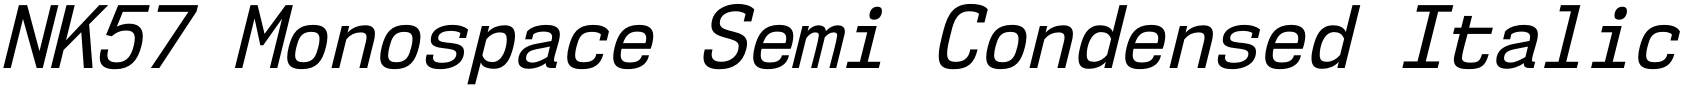 NK57 Monospace Semi Condensed Italic